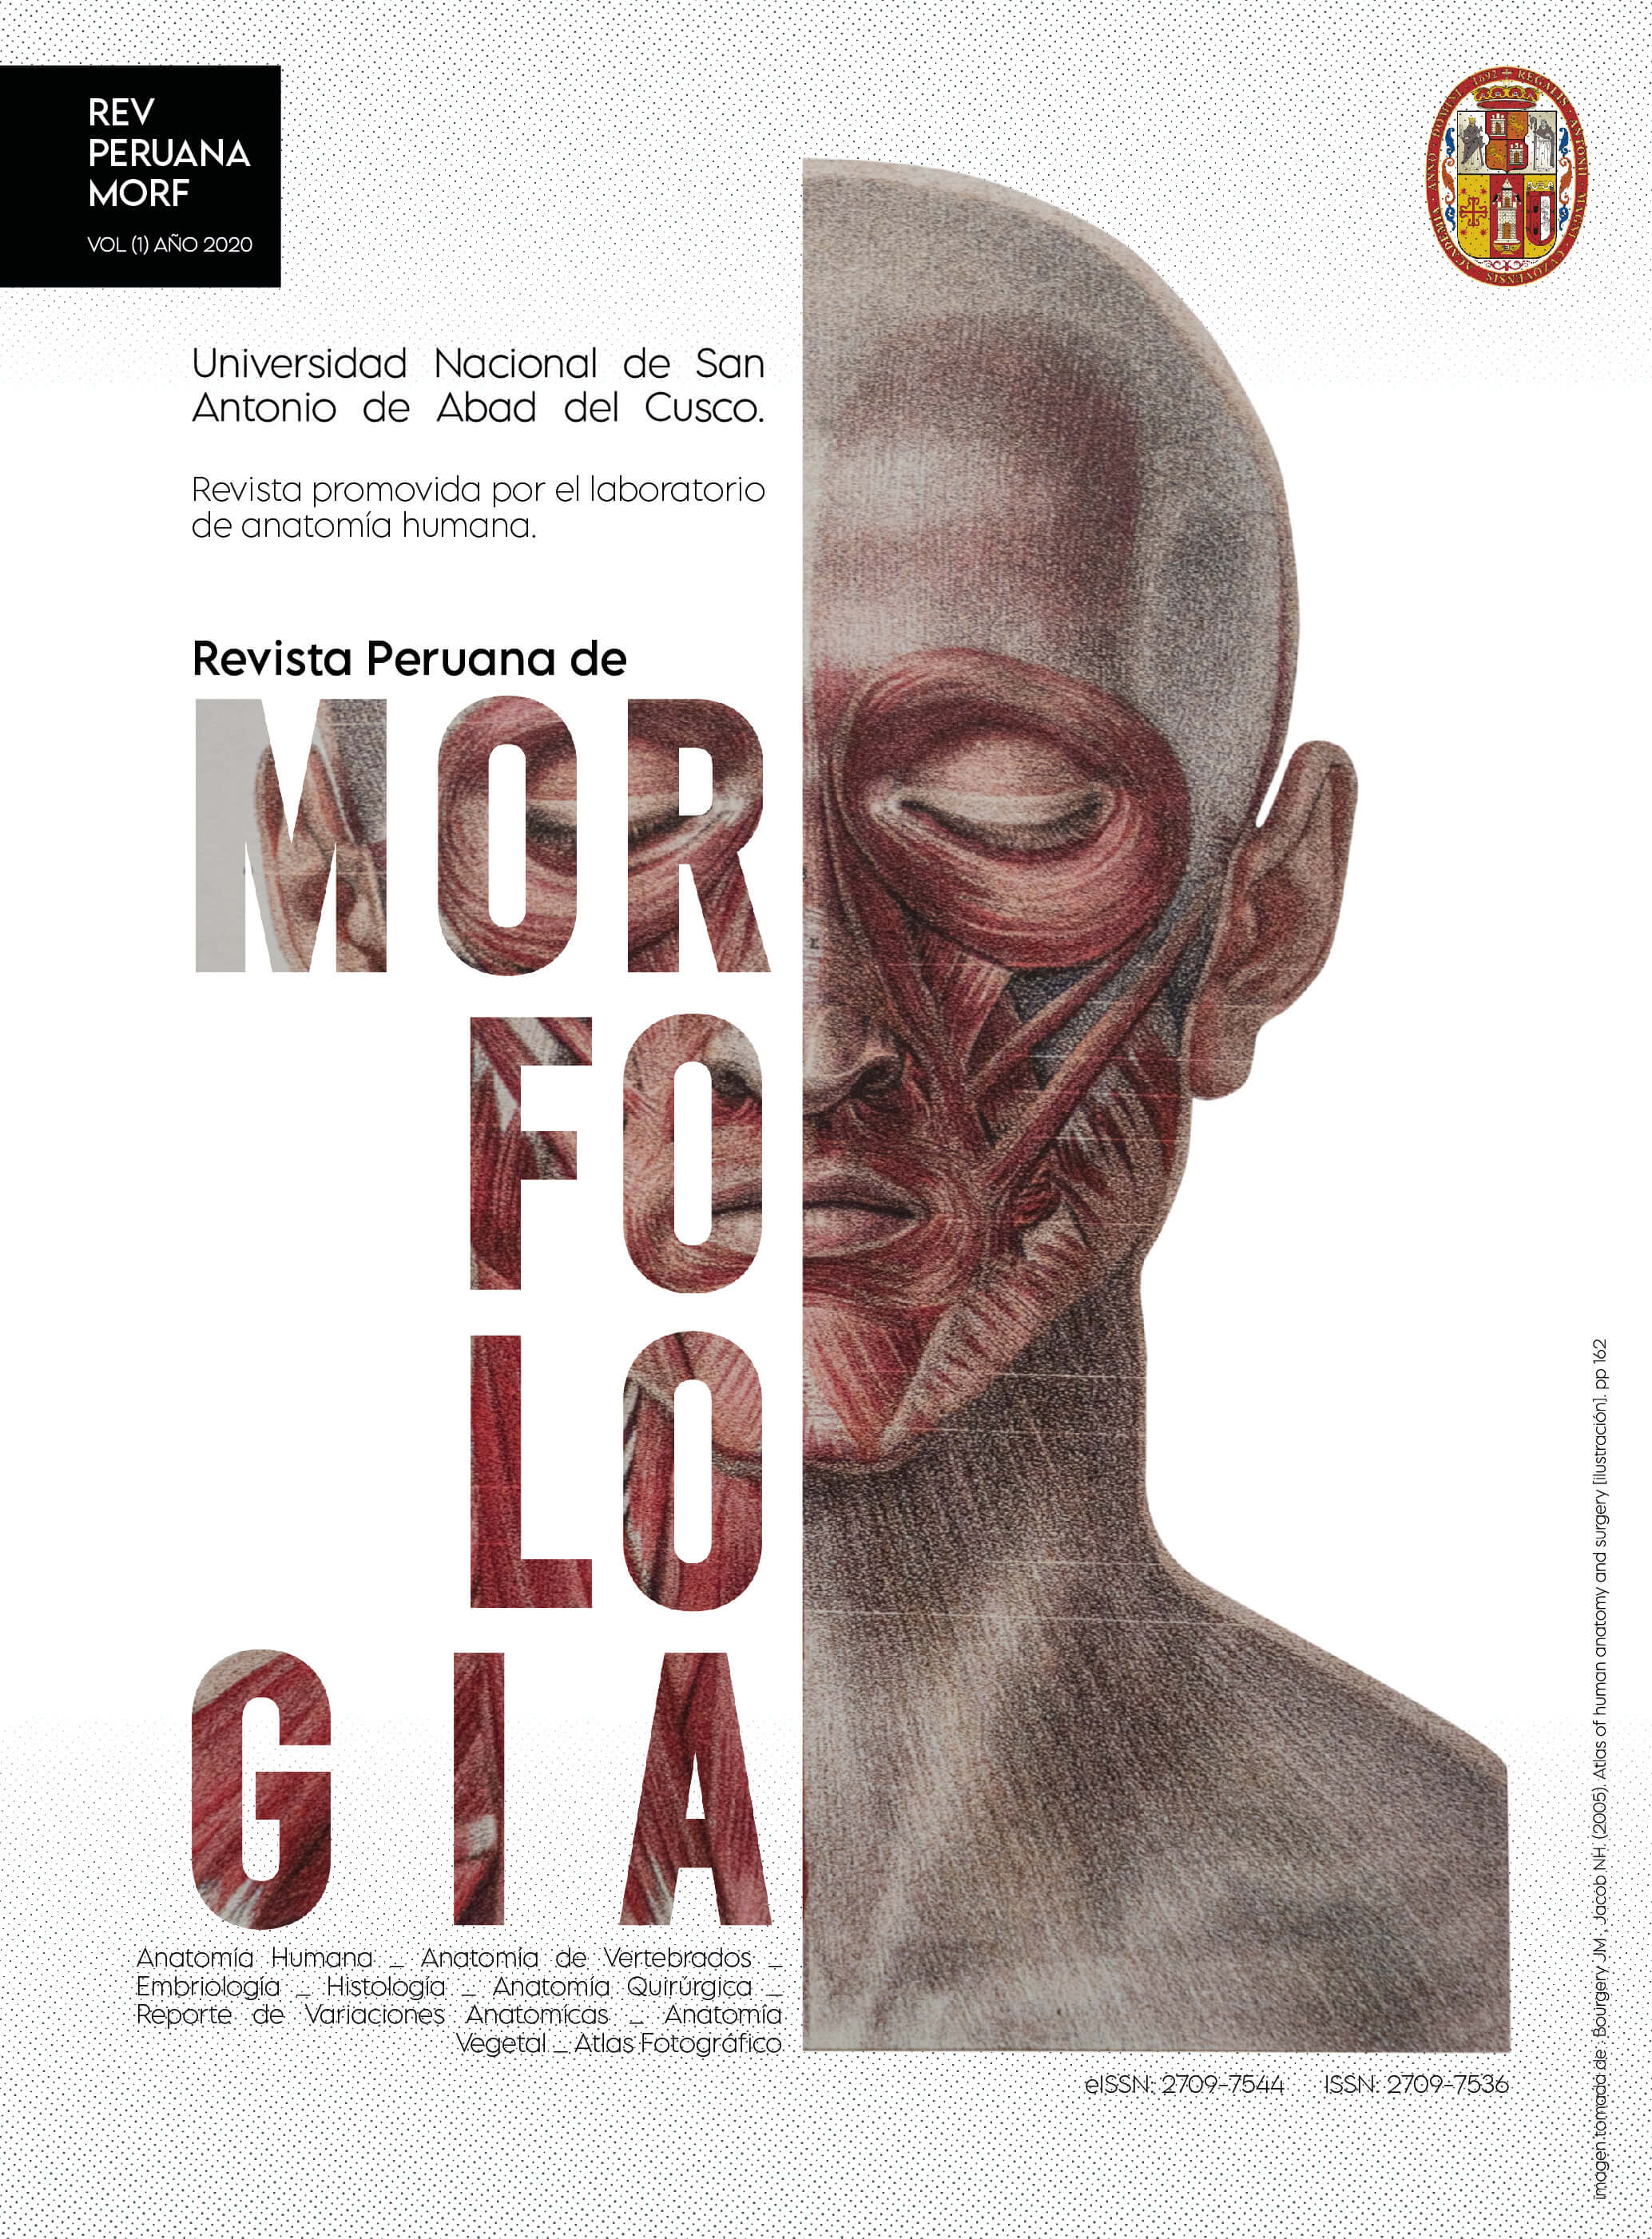 Revista Peruana de Mofologia